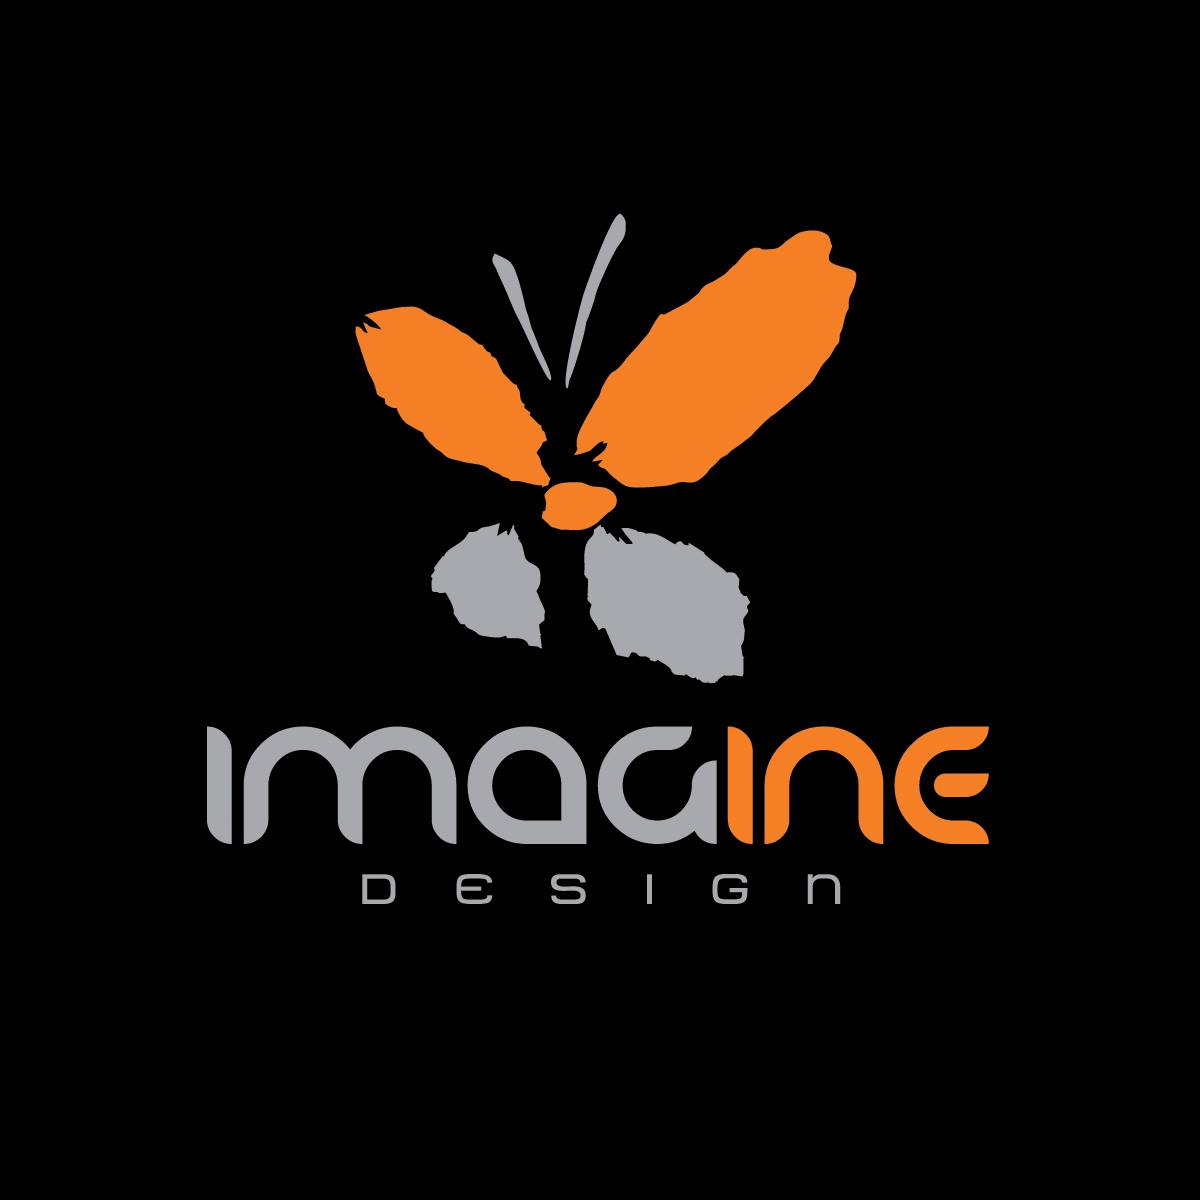 Graphic partner Imagine Design